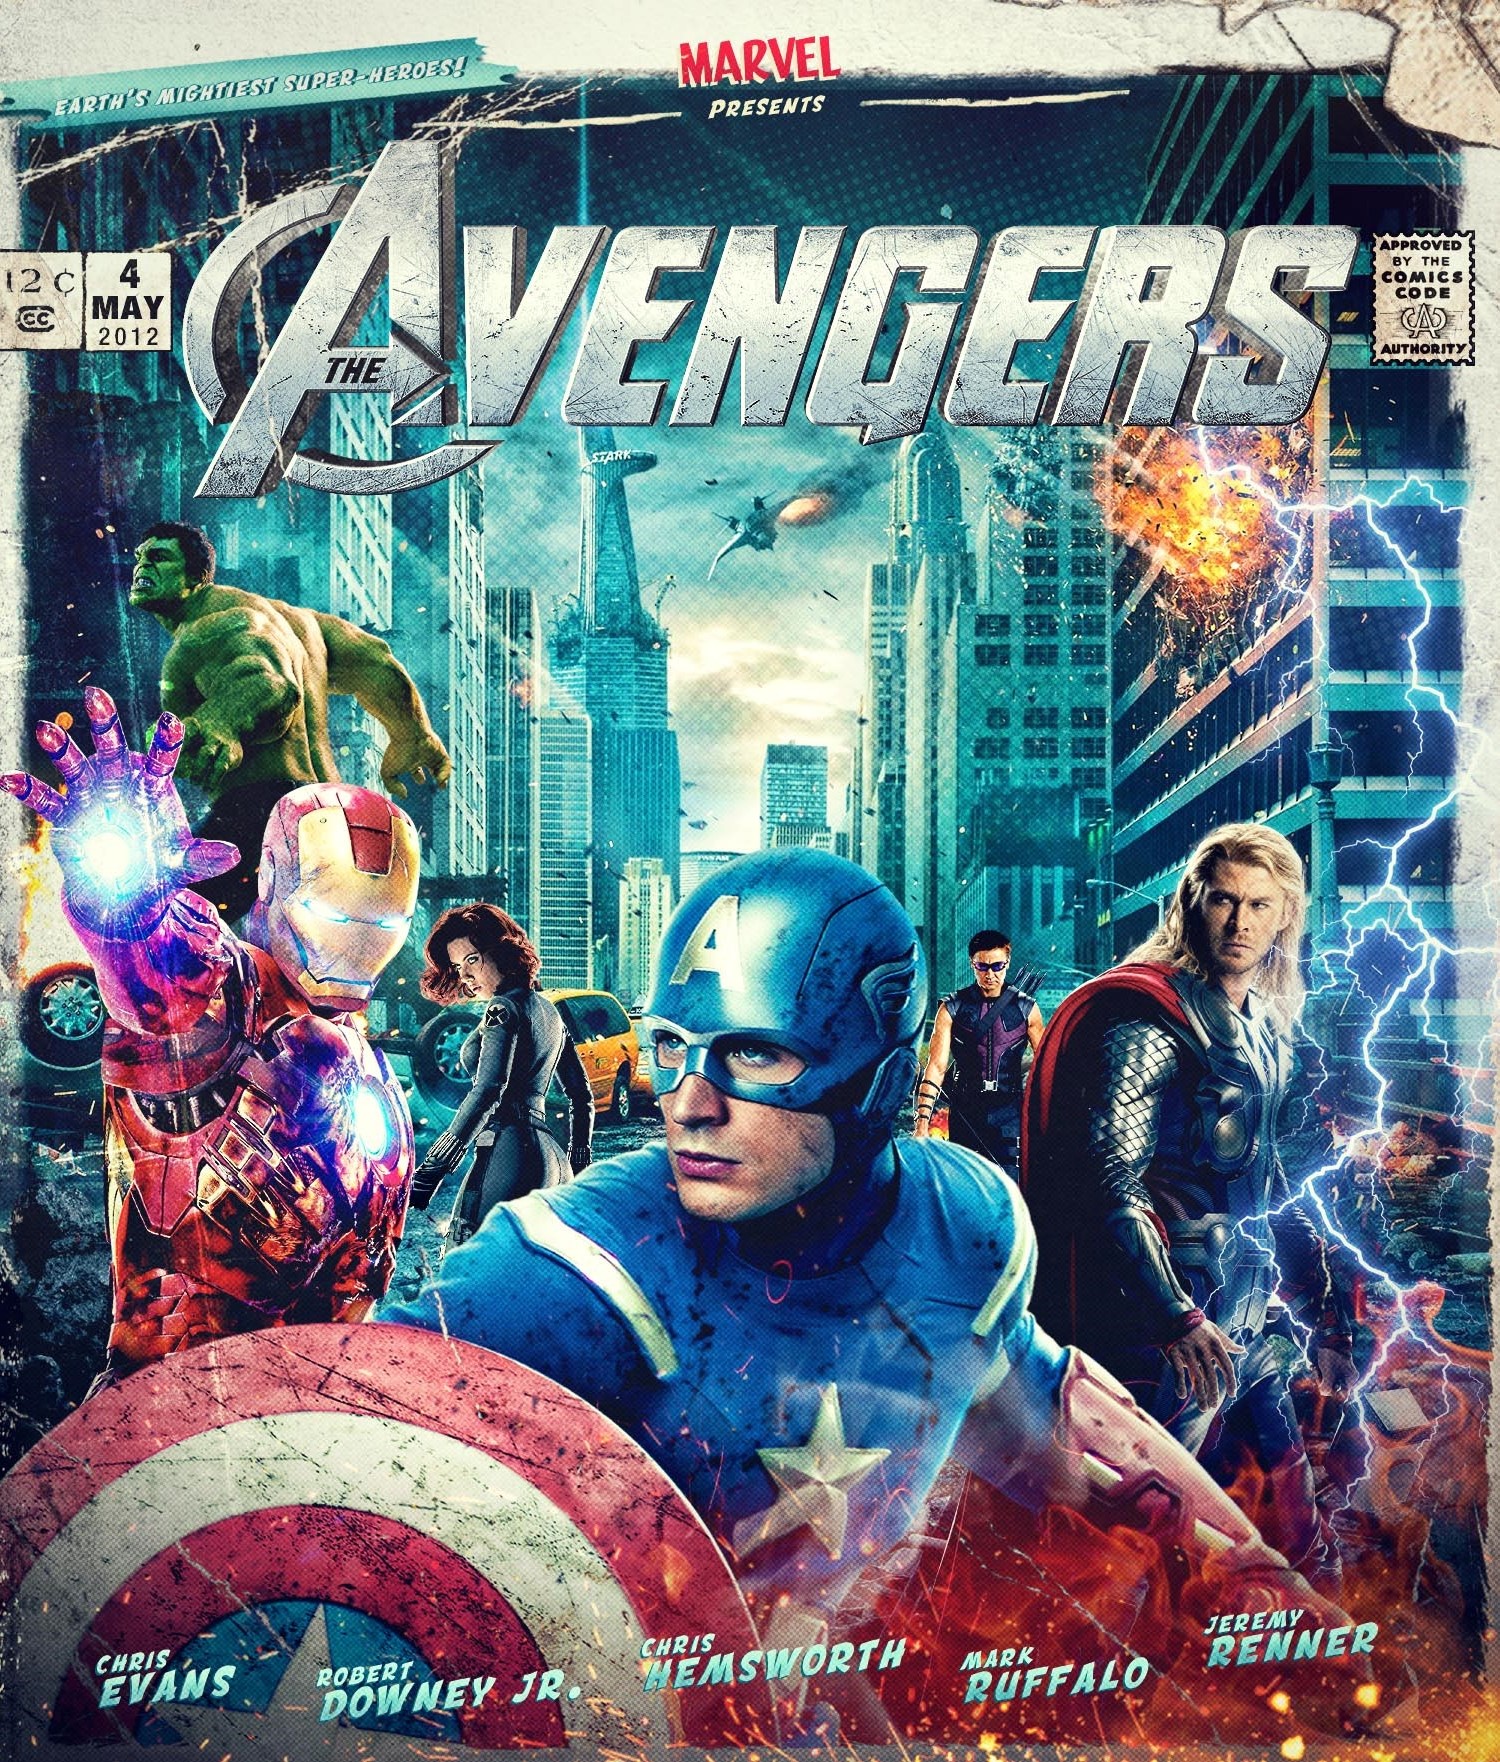 The Marvel Avengers Poster.................jpg